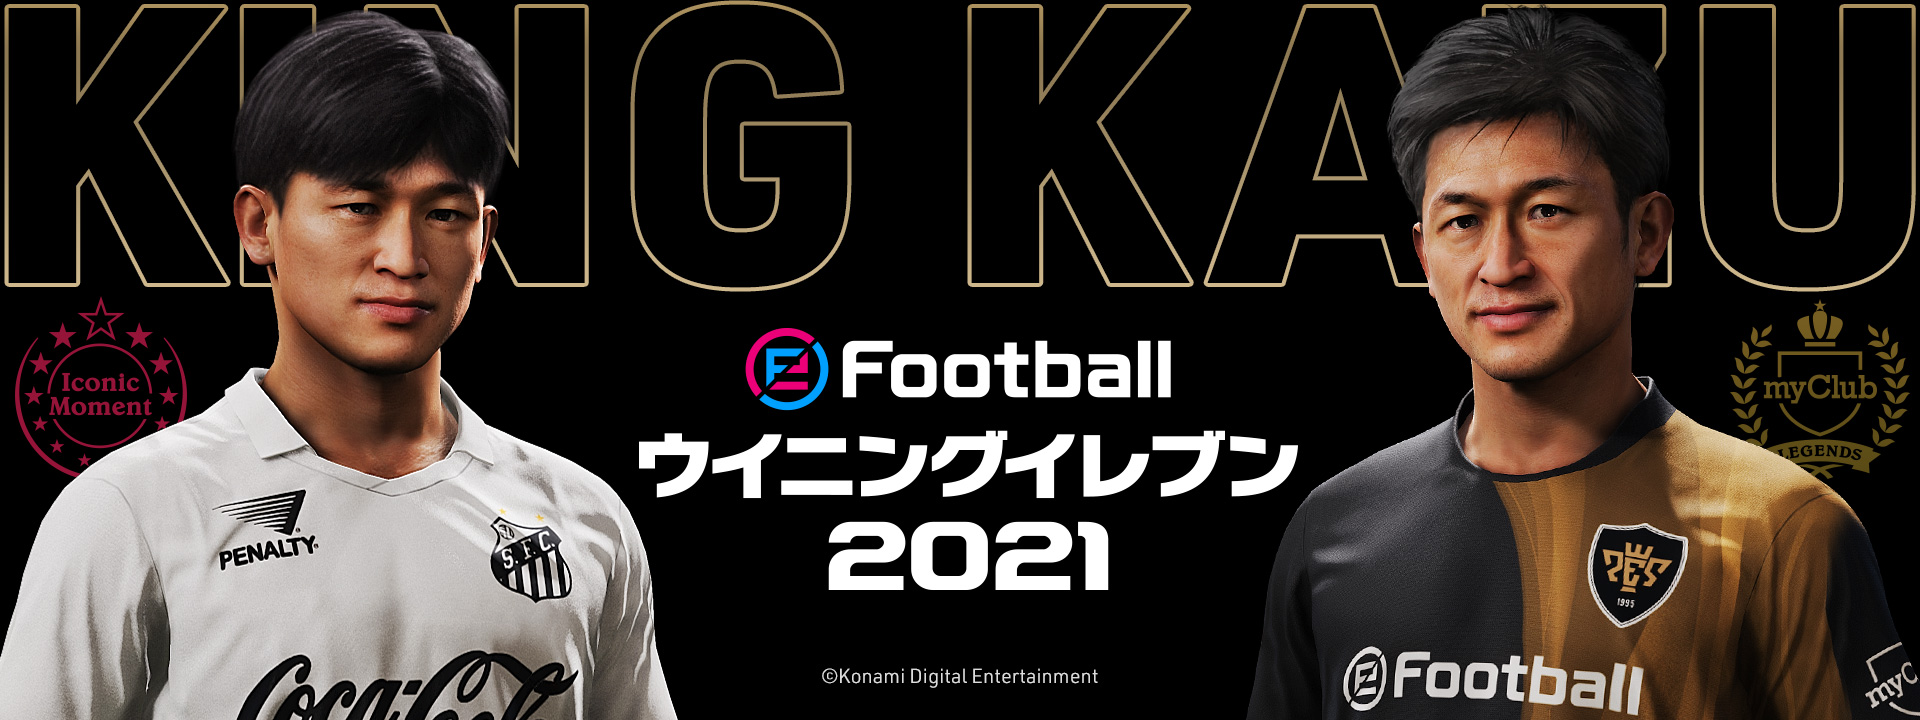 ウイニングイレブン シリーズが King Kazu こと三浦知良 選手とのパートナーシップ契約を締結 株式会社コナミデジタルエンタテインメントのプレスリリース